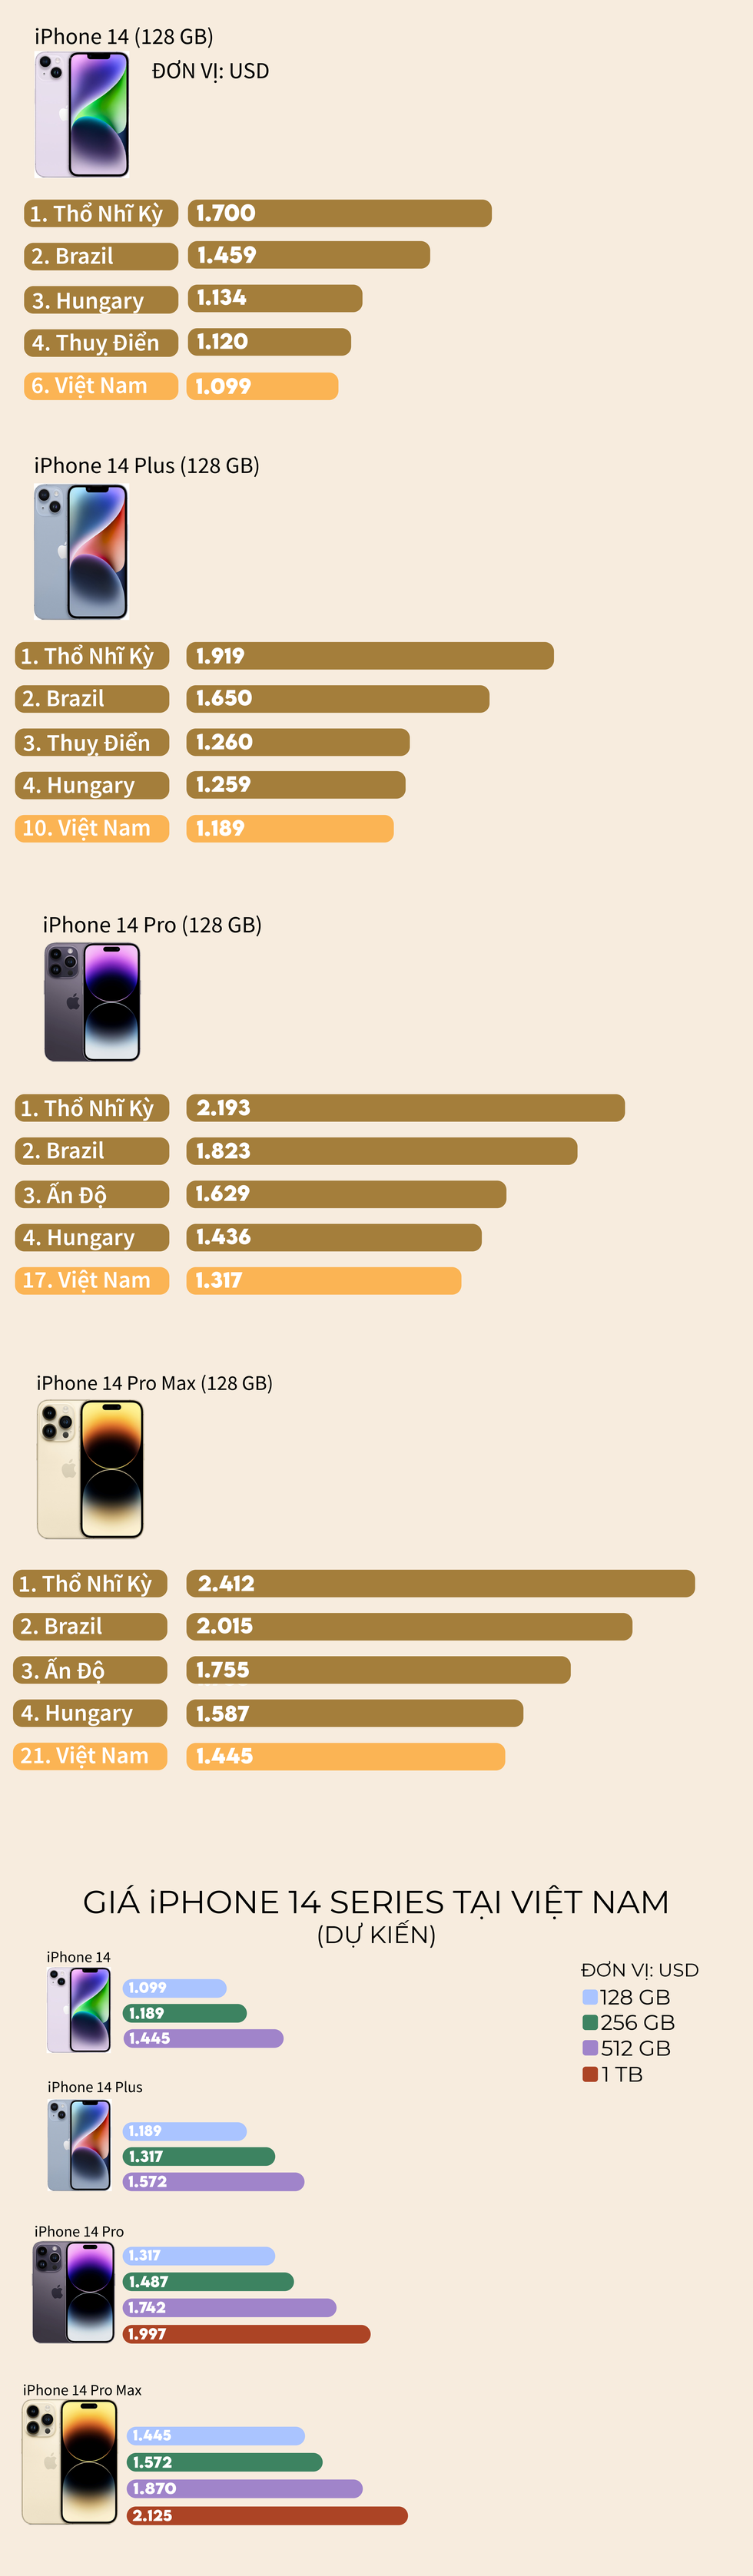 Giá iPhone 14 tại Việt Nam nằm trong danh sách đắt nhất thế giới ảnh 1